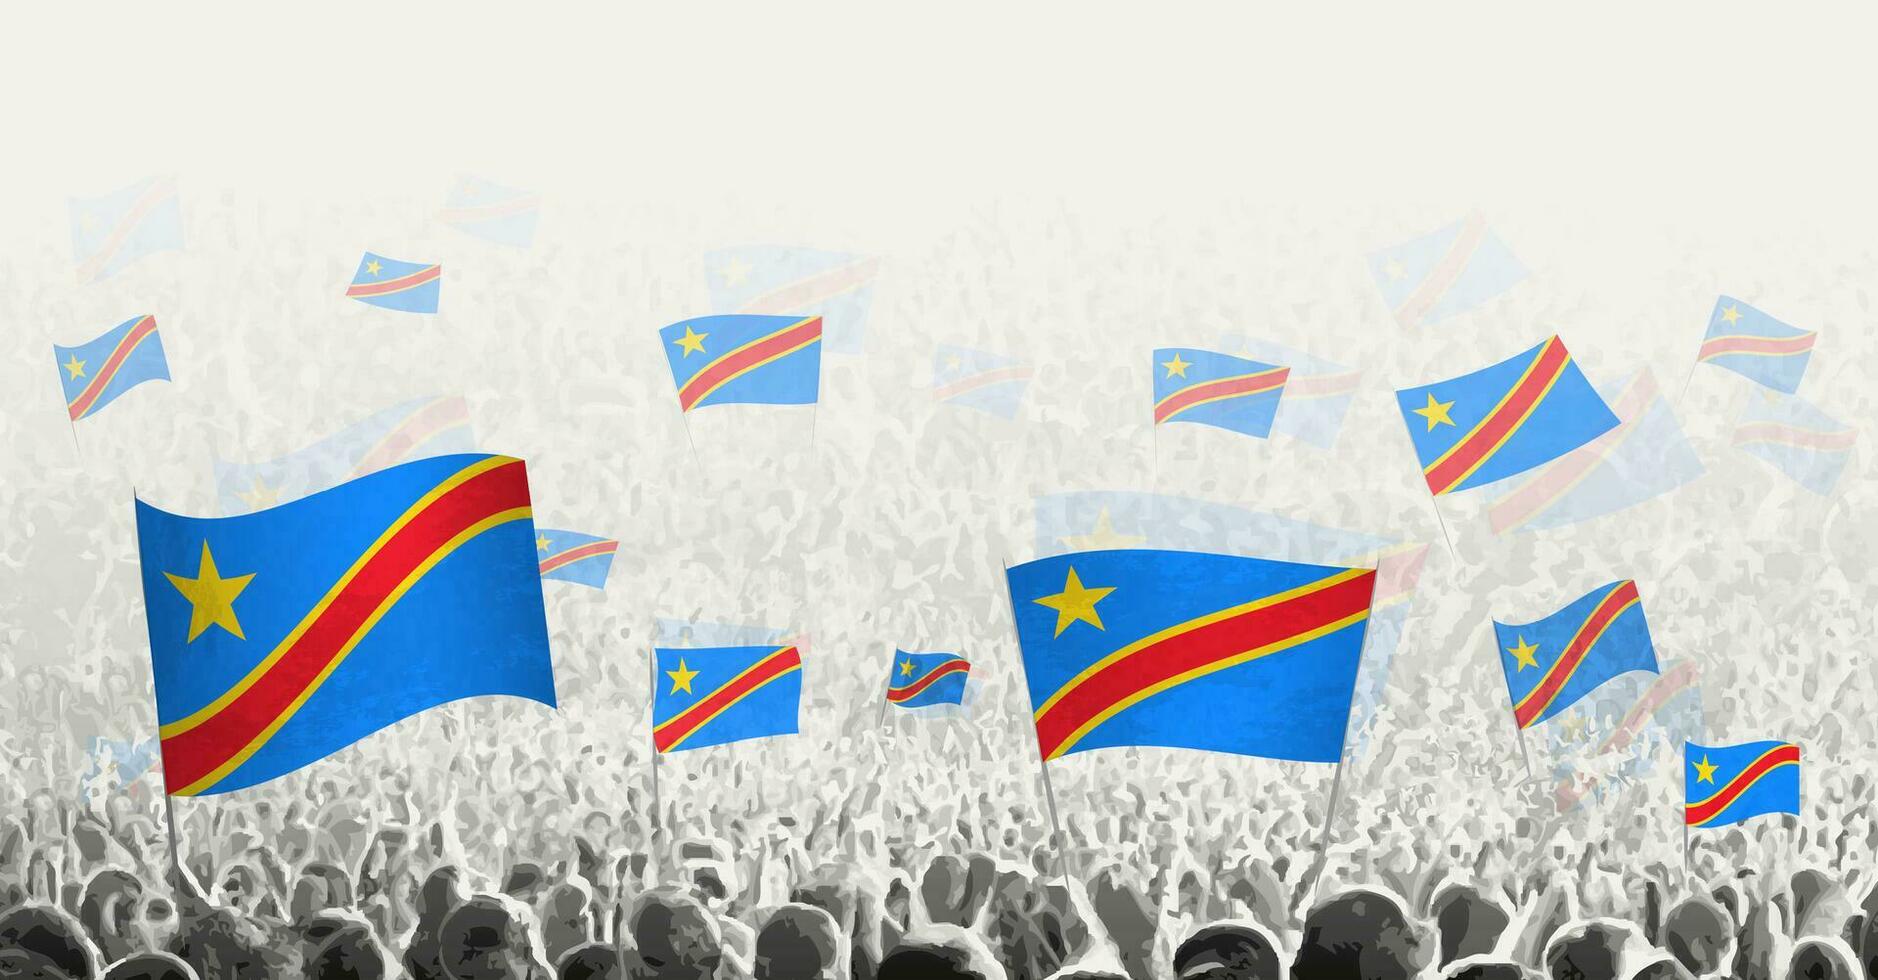 resumen multitud con bandera de Dr congo pueblos protesta, revolución, Huelga y demostración con bandera de Dr congo vector